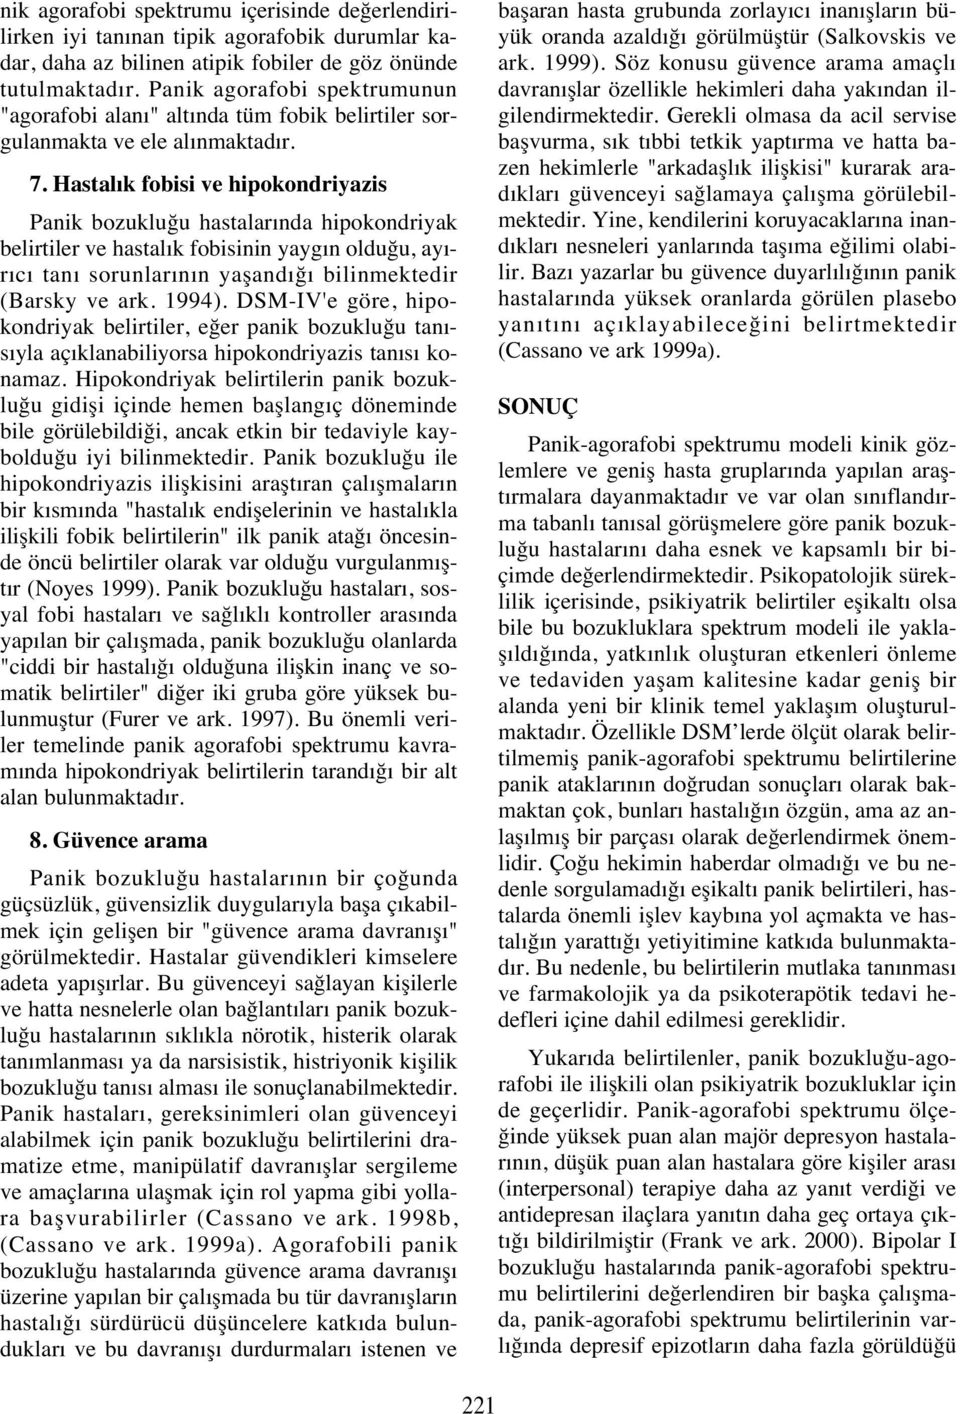 Hastal k fobisi ve hipokondriyazis Panik bozukluğu hastalar nda hipokondriyak belirtiler ve hastal k fobisinin yayg n olduğu, ay - r c tan sorunlar n n yaşand ğ bilinmektedir (Barsky ve ark. 1994).